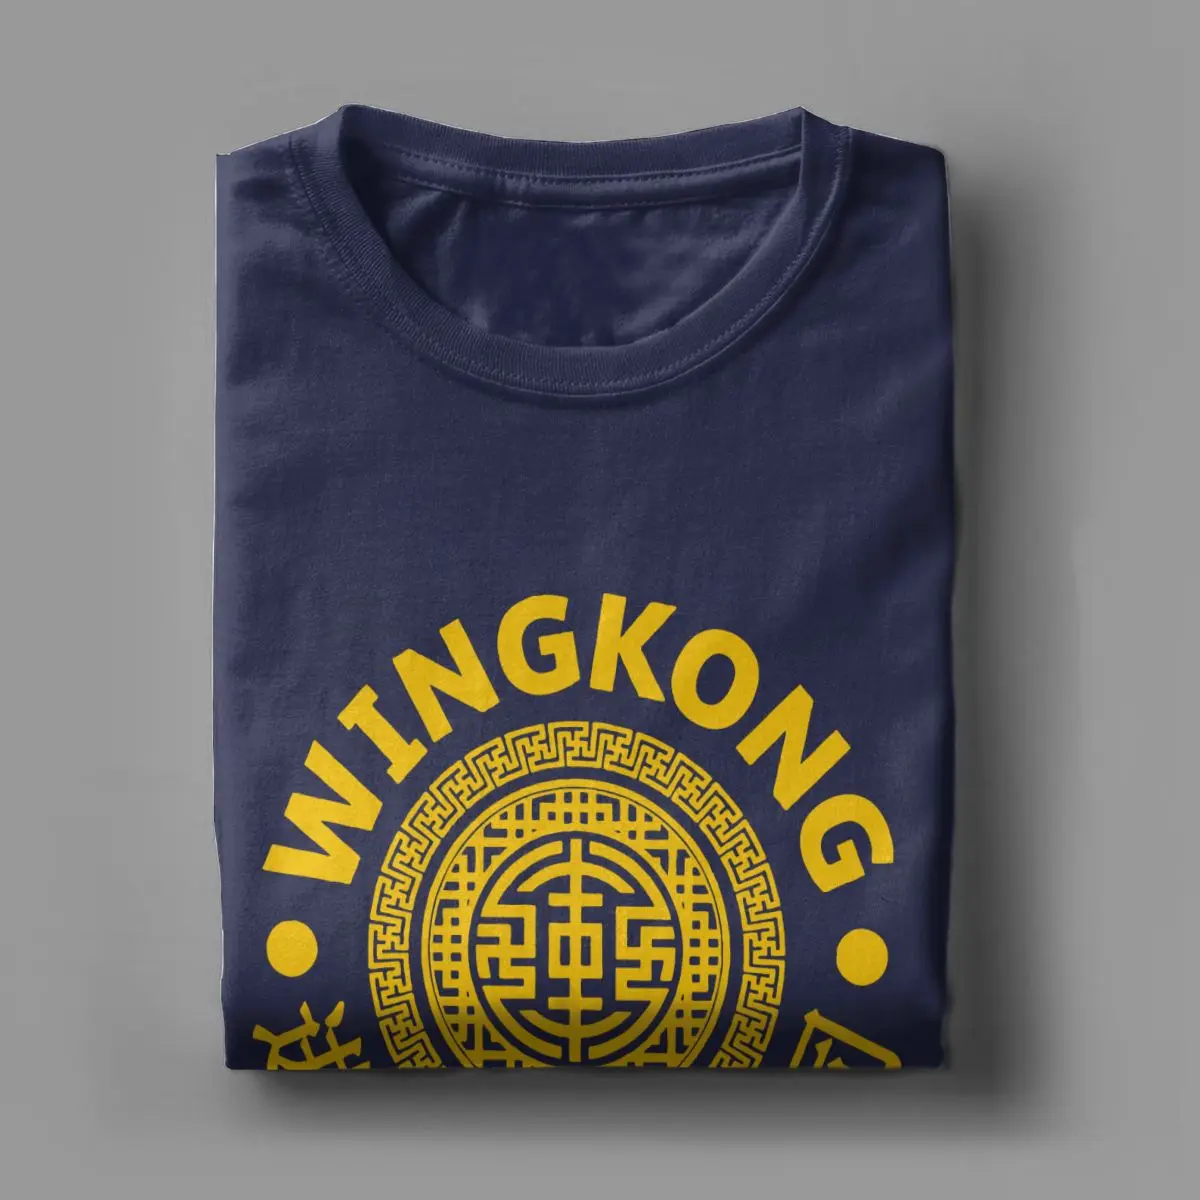 Мужские футболки Wing Kong Big Trouble In Little China одежда из чистого хлопка 2019 модные летние